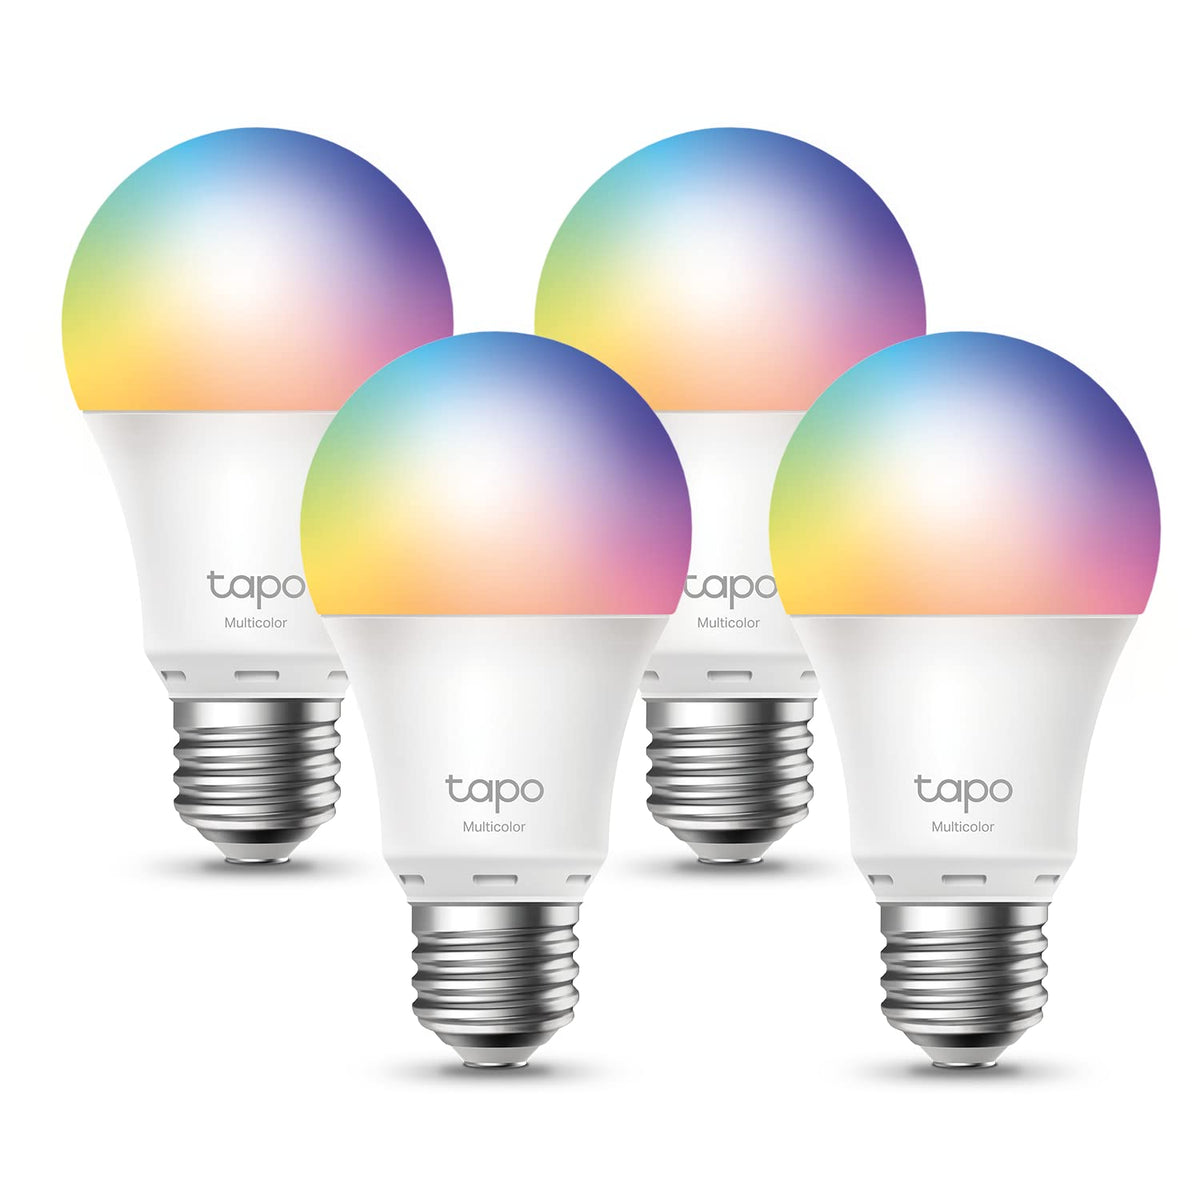 Tapo L535E, Bombilla LED Inteligente RGB Multicolor